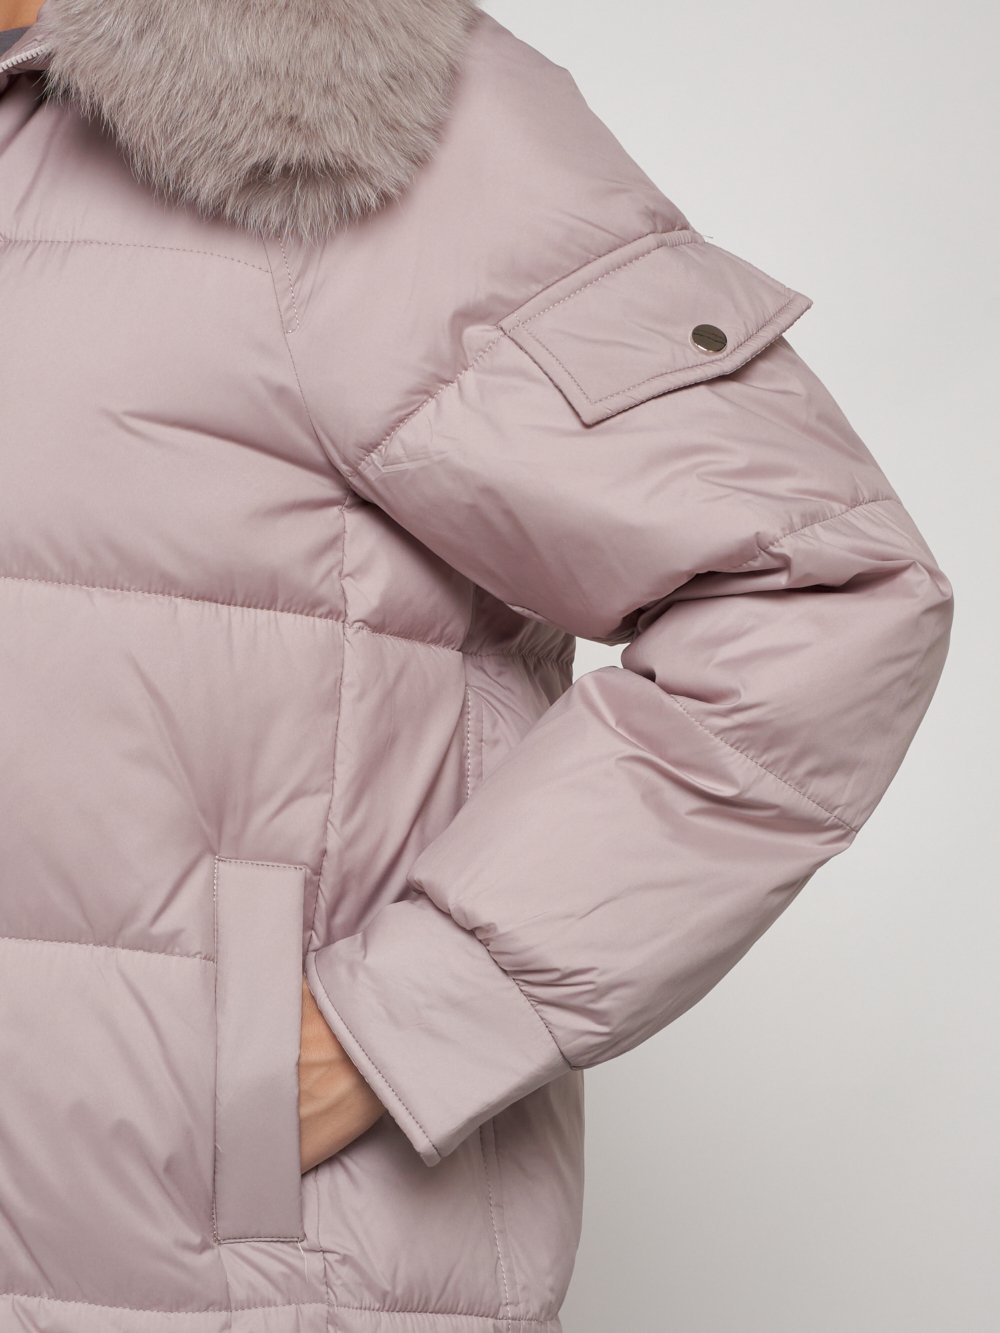 Купить куртку женскую оптом от производителя недорого в Москве 13301SK 1